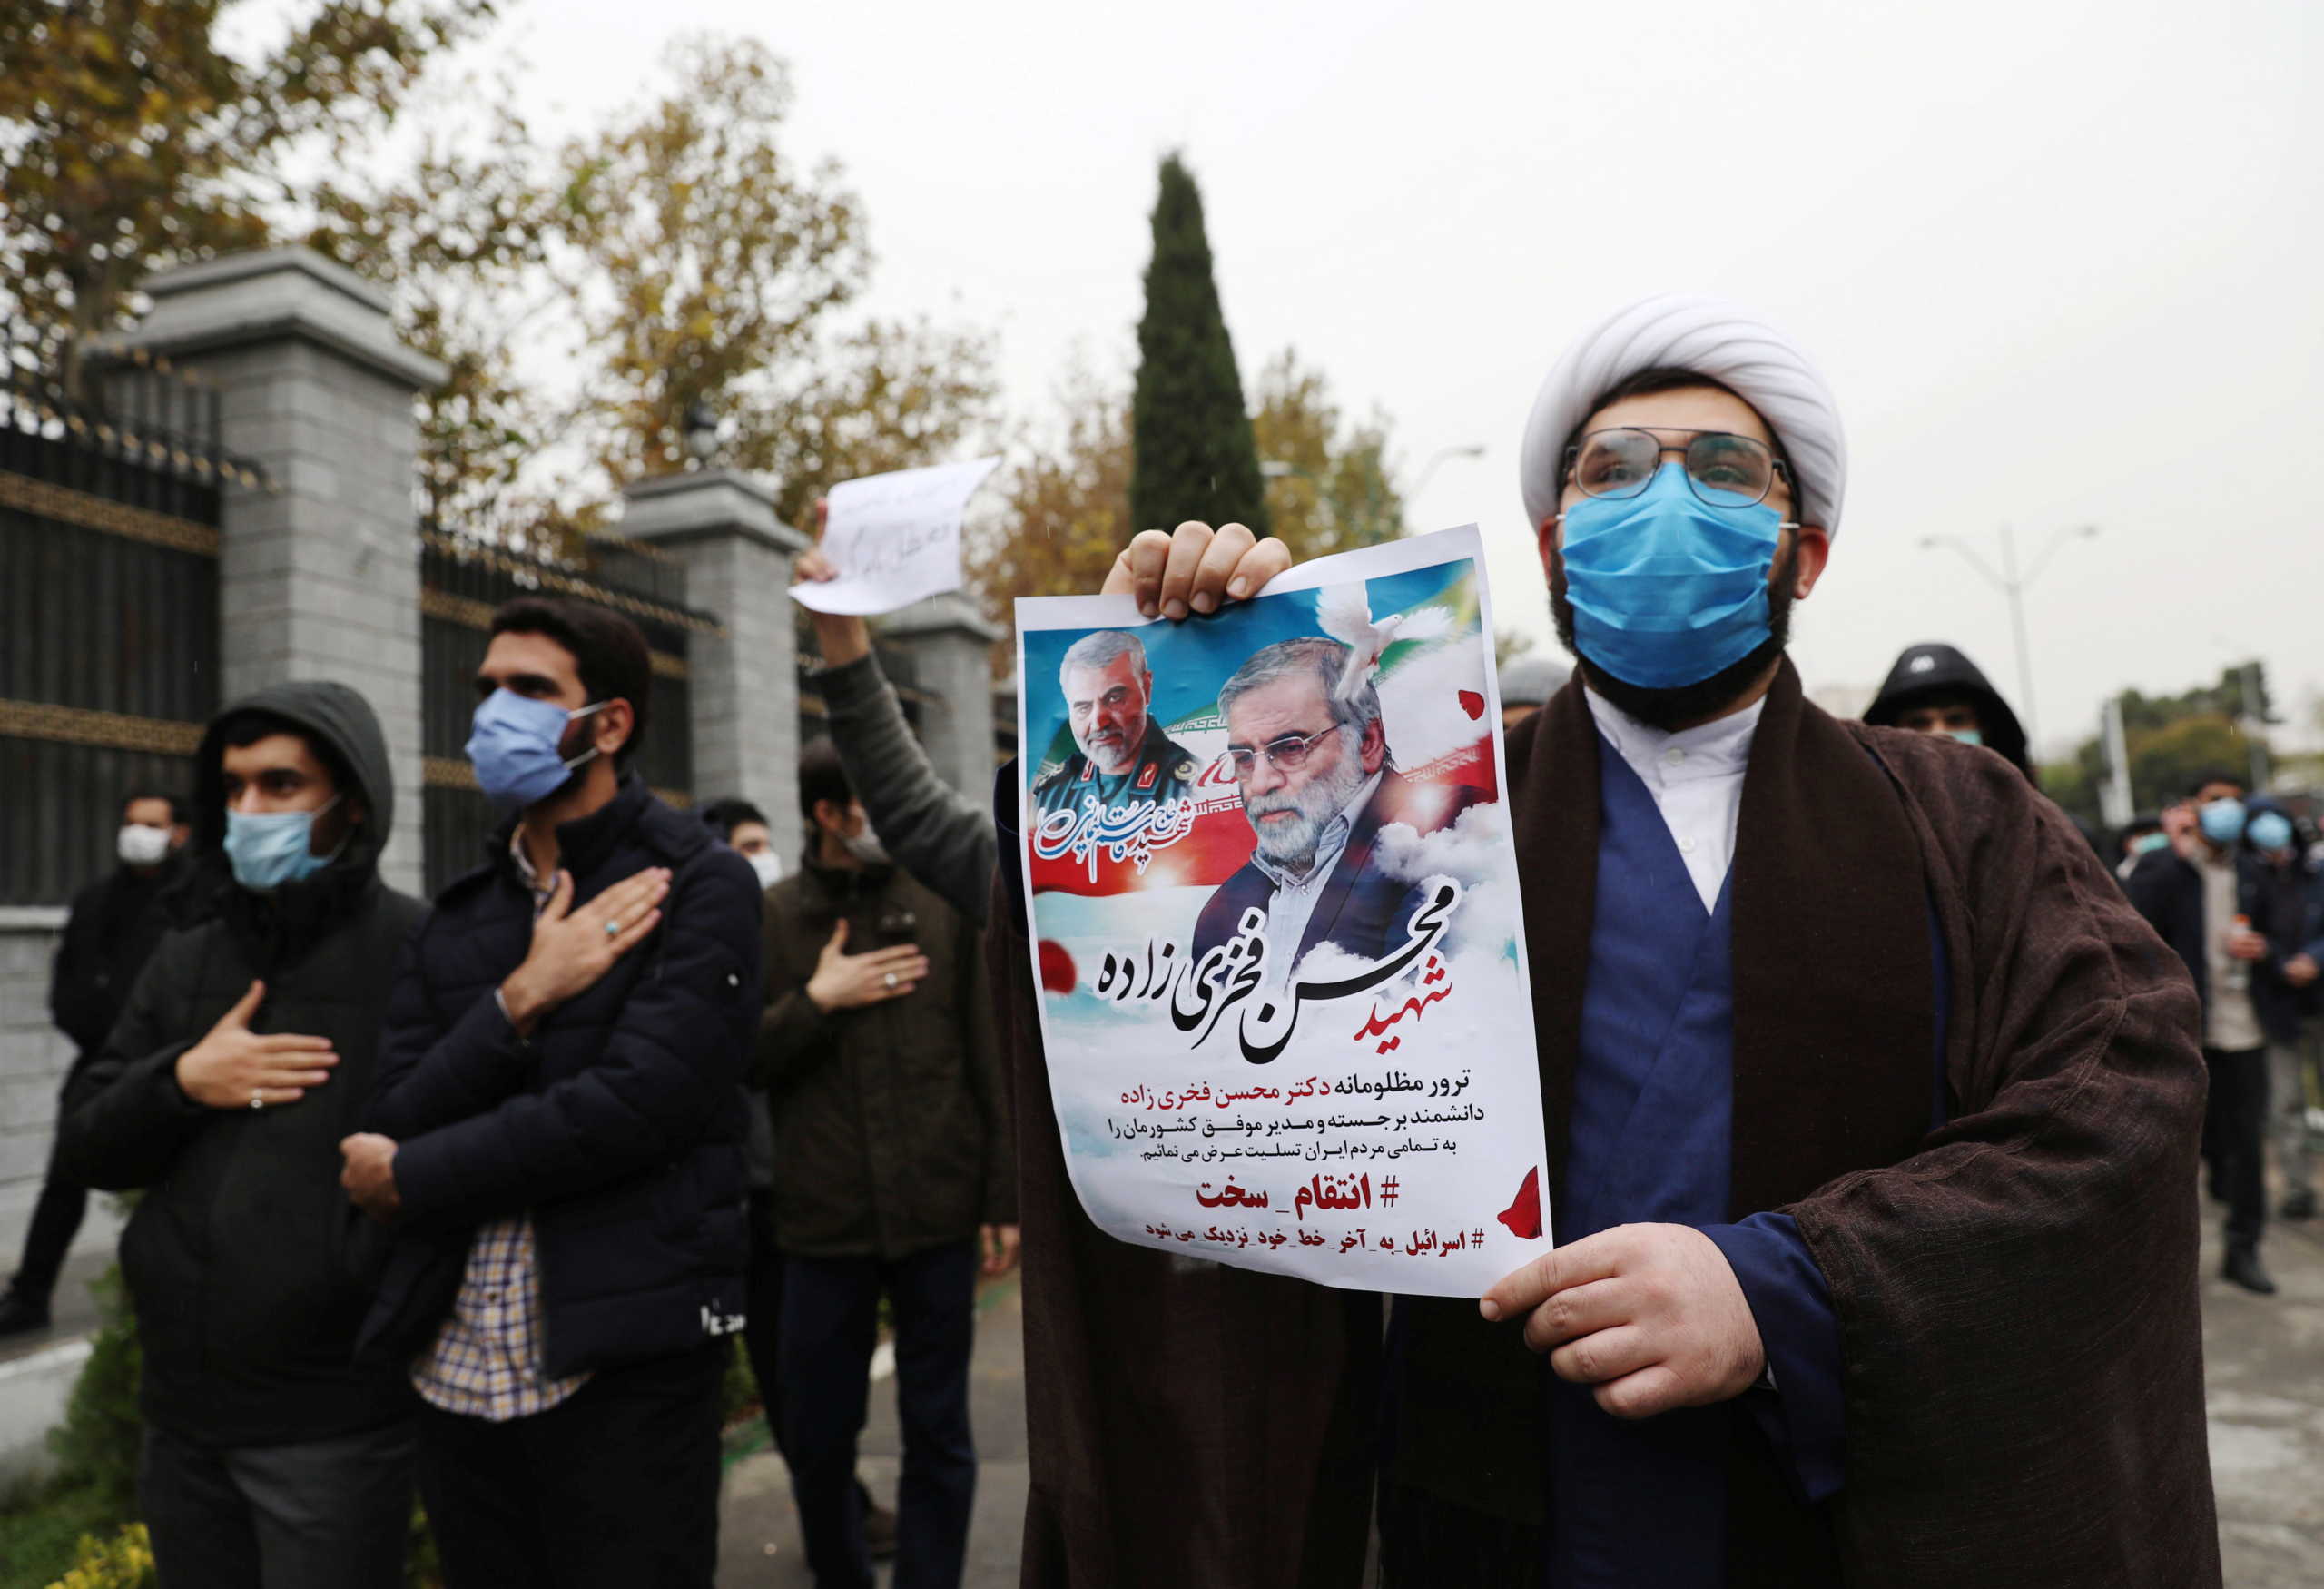 “Το αμερικανικό αεροπλανοφόρο στον Κόλπο δεν έχει σχέση με τη δολοφονία του Ιρανού επιστήμονα”